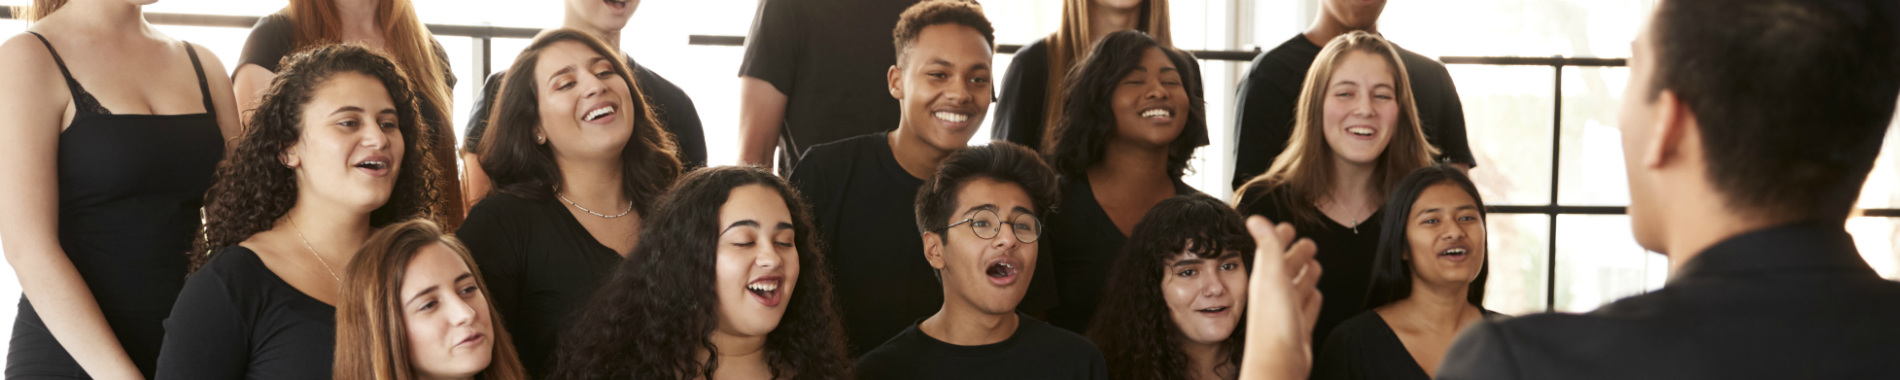 Social prescribing young choir